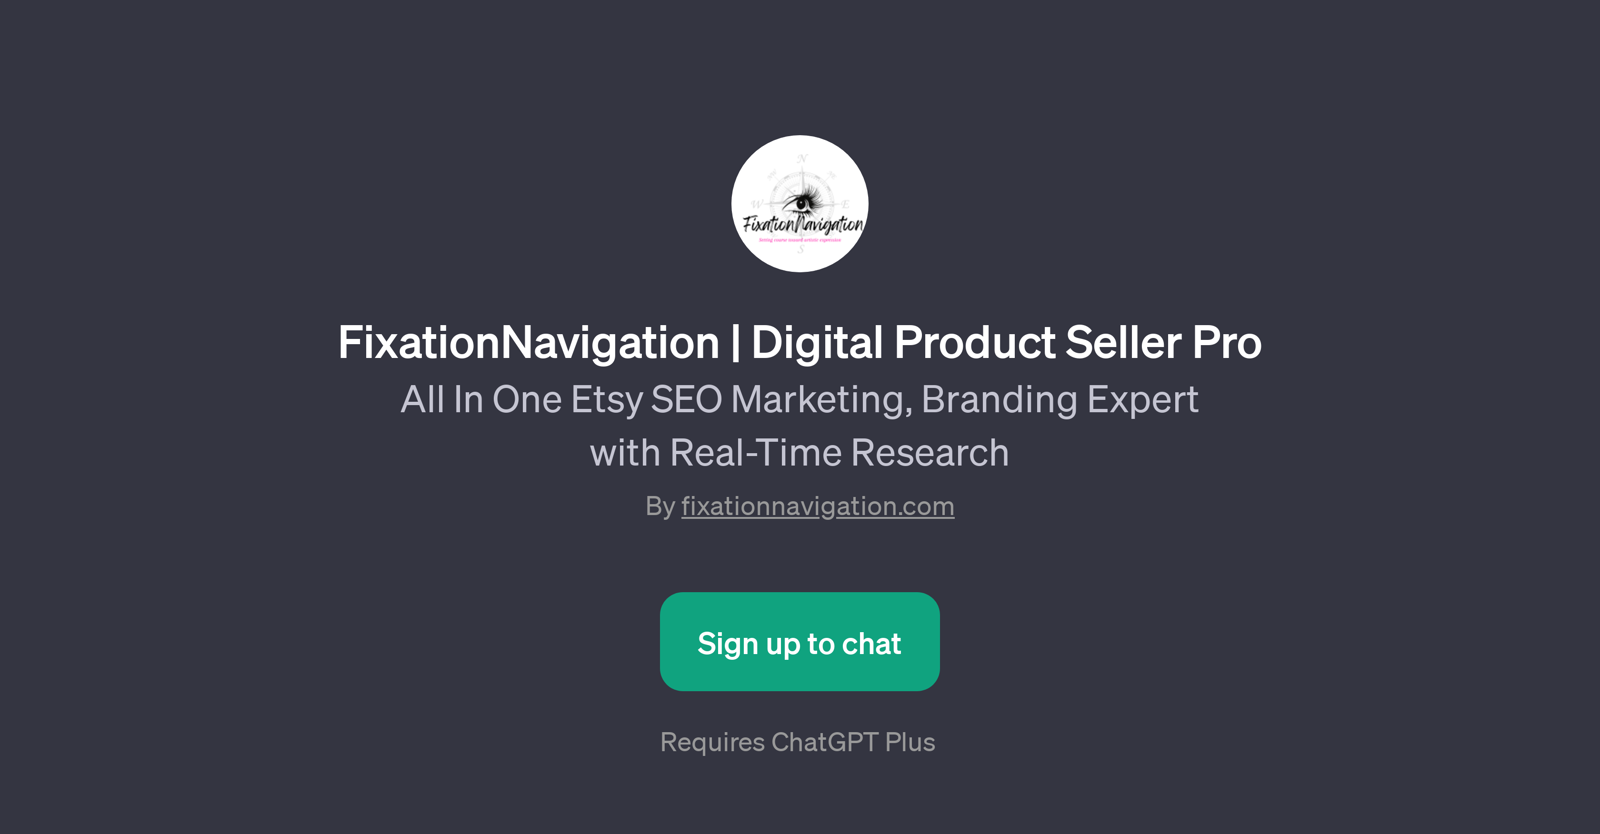 FixationNavigation Digital Product Seller Pro website